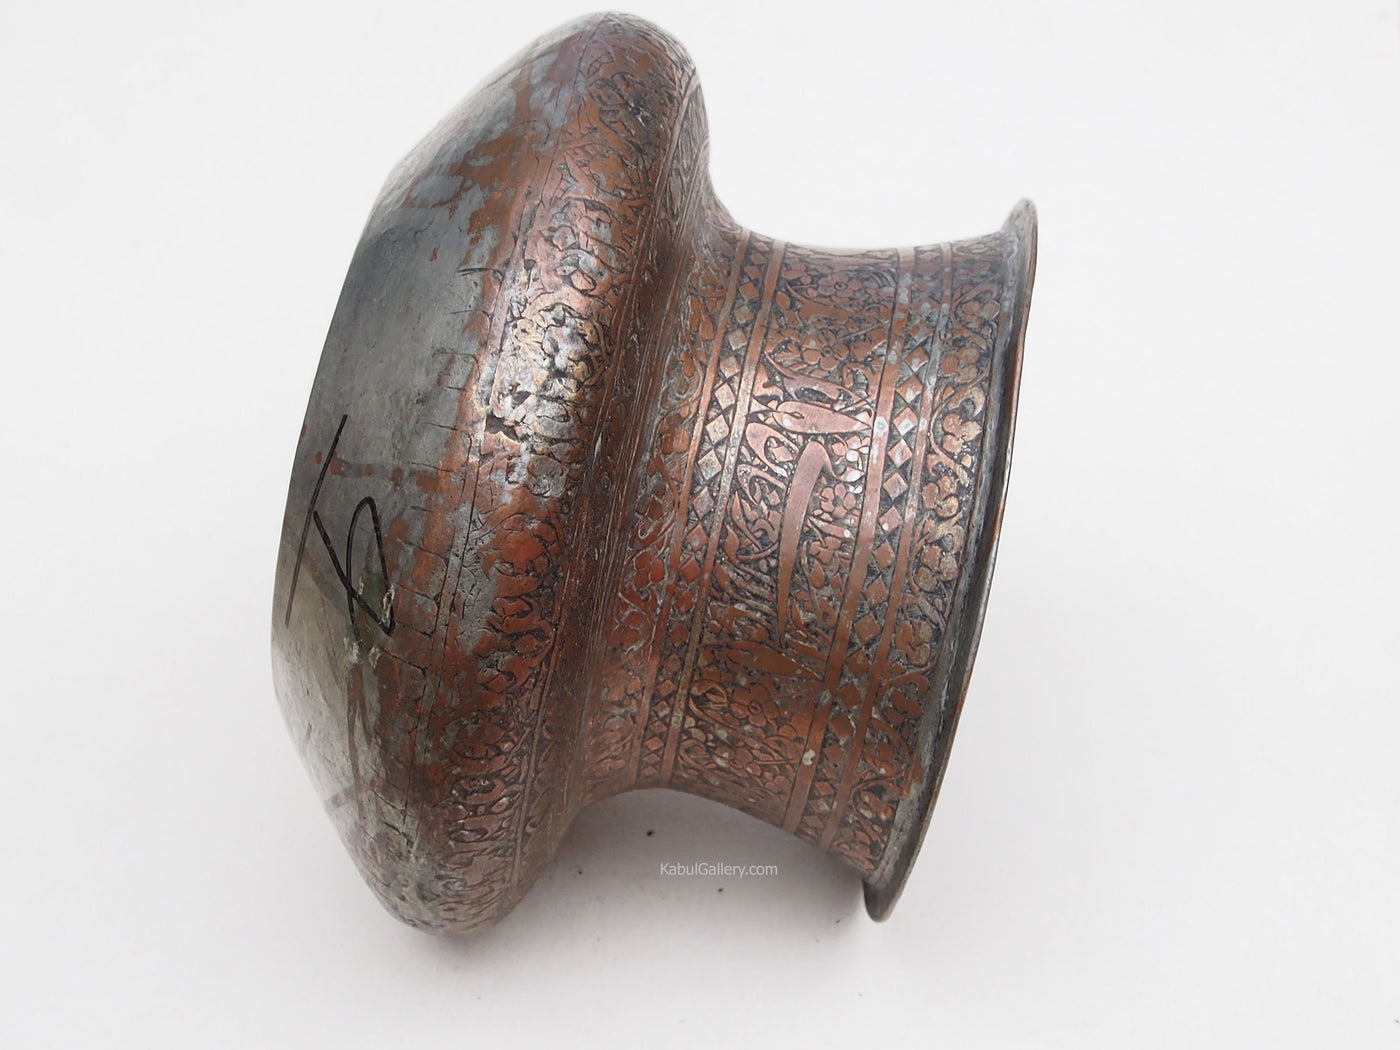 antik Massiv islamische Kupfer verzinnte Kupfer  schale Schüssel gefäß aus Afghanistan  19. Jh. Tas Nr:33  Orientsbazar   